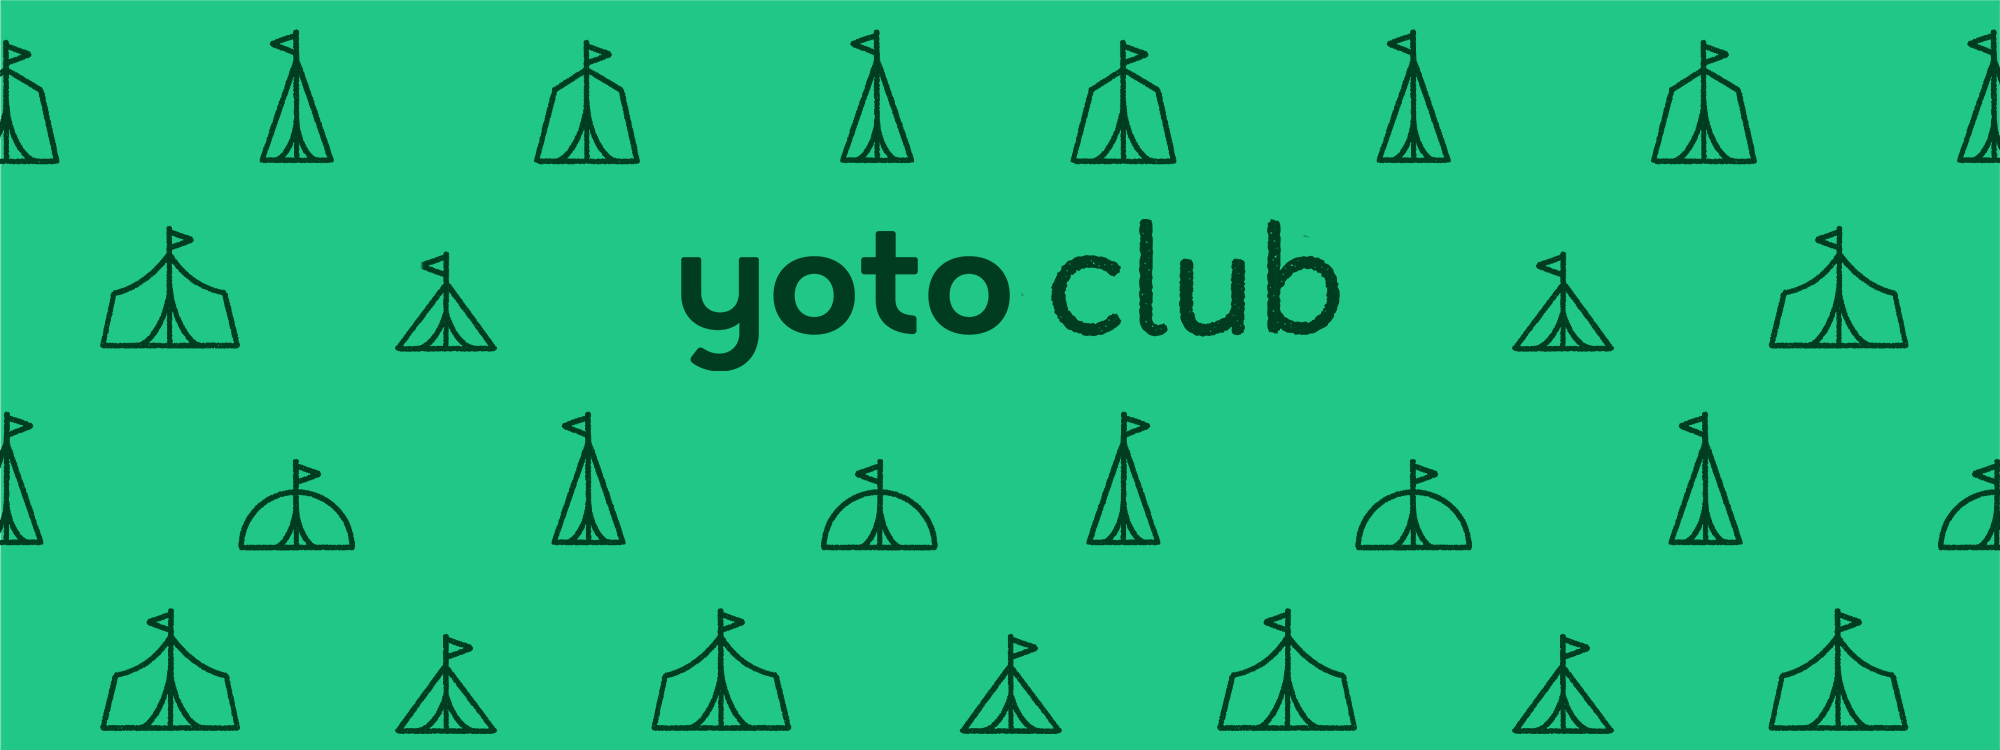 New Yoto Club FAQs